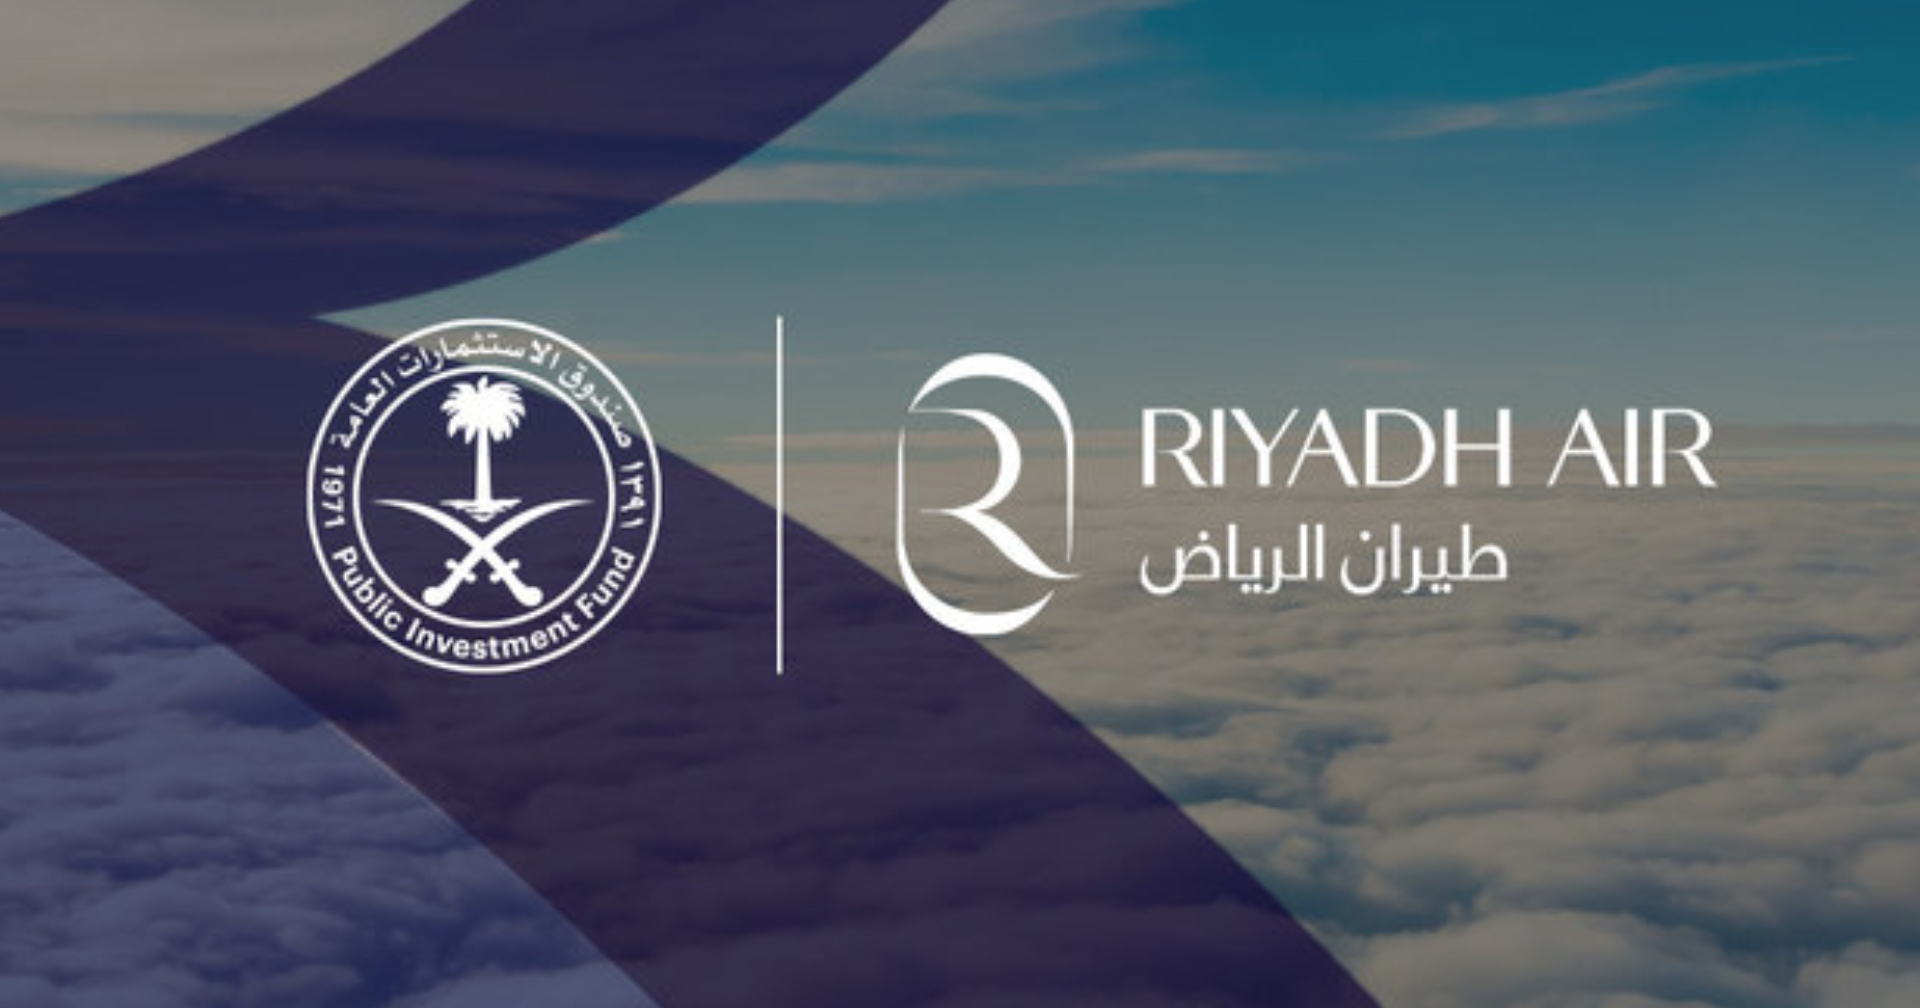 ซาอุฯ เปิดตัวสายการบินใหม่ ‘Riyadh Air’ ช่วยกระตุ้นการท่องเที่ยวและกระจายเศรษฐกิจจากน้ำมัน